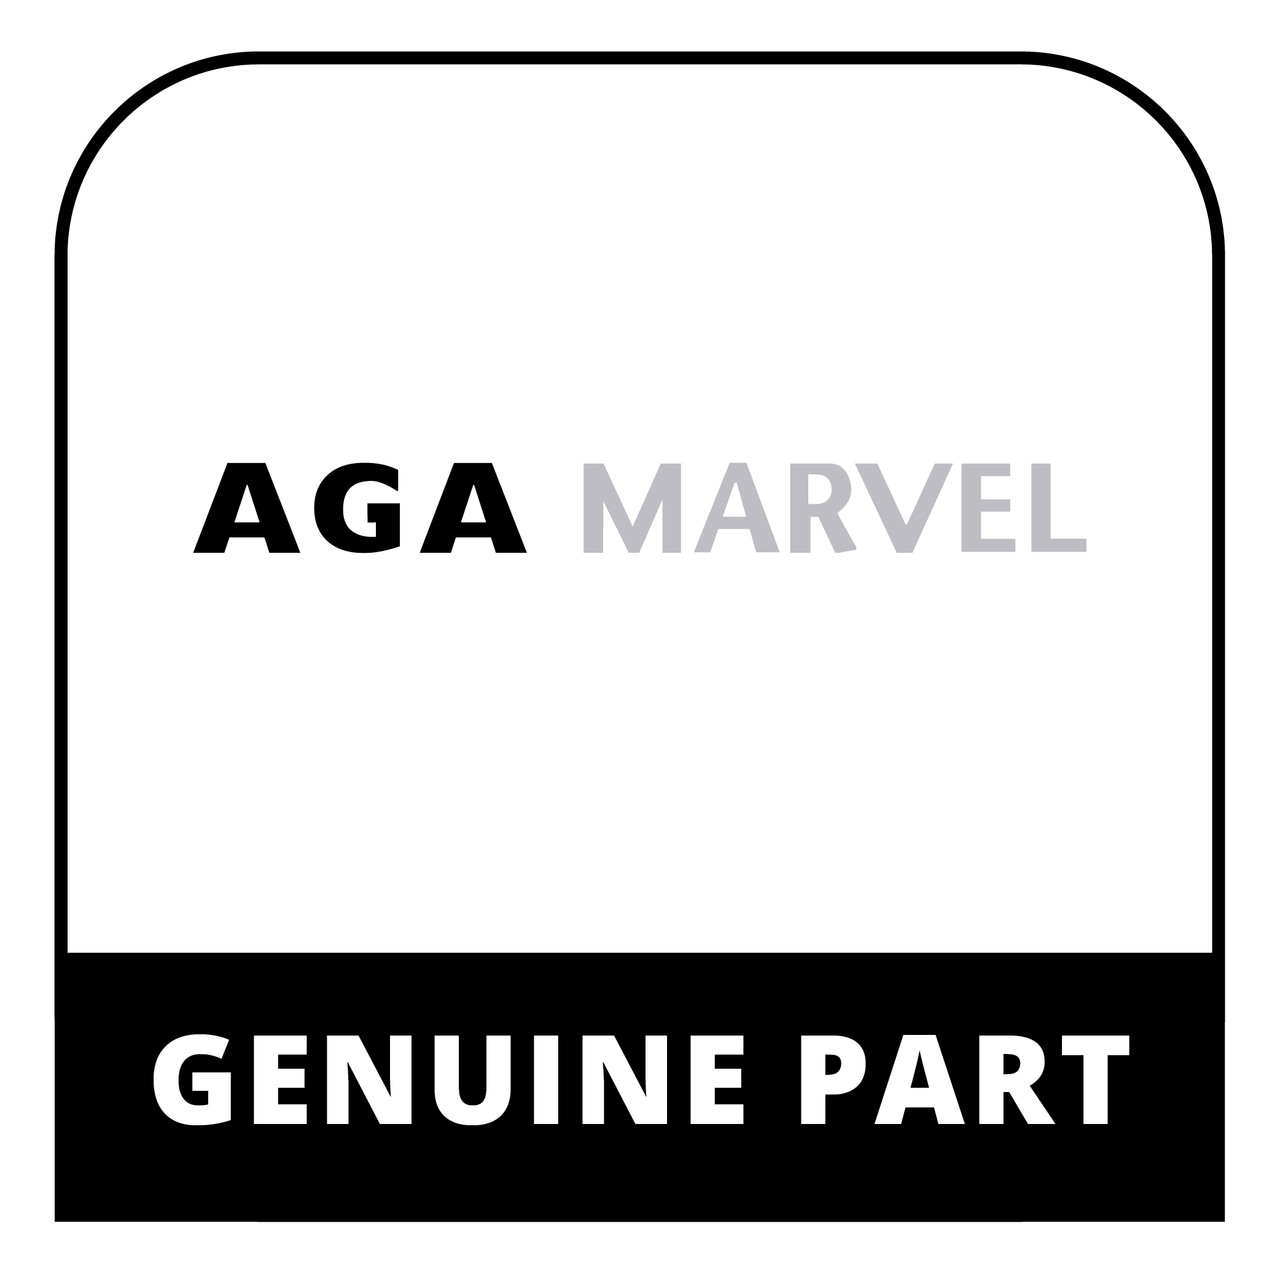 AGA Marvel RO2M342366 - Panel-Control Door Lining (Mx) - Genuine AGA Marvel Part